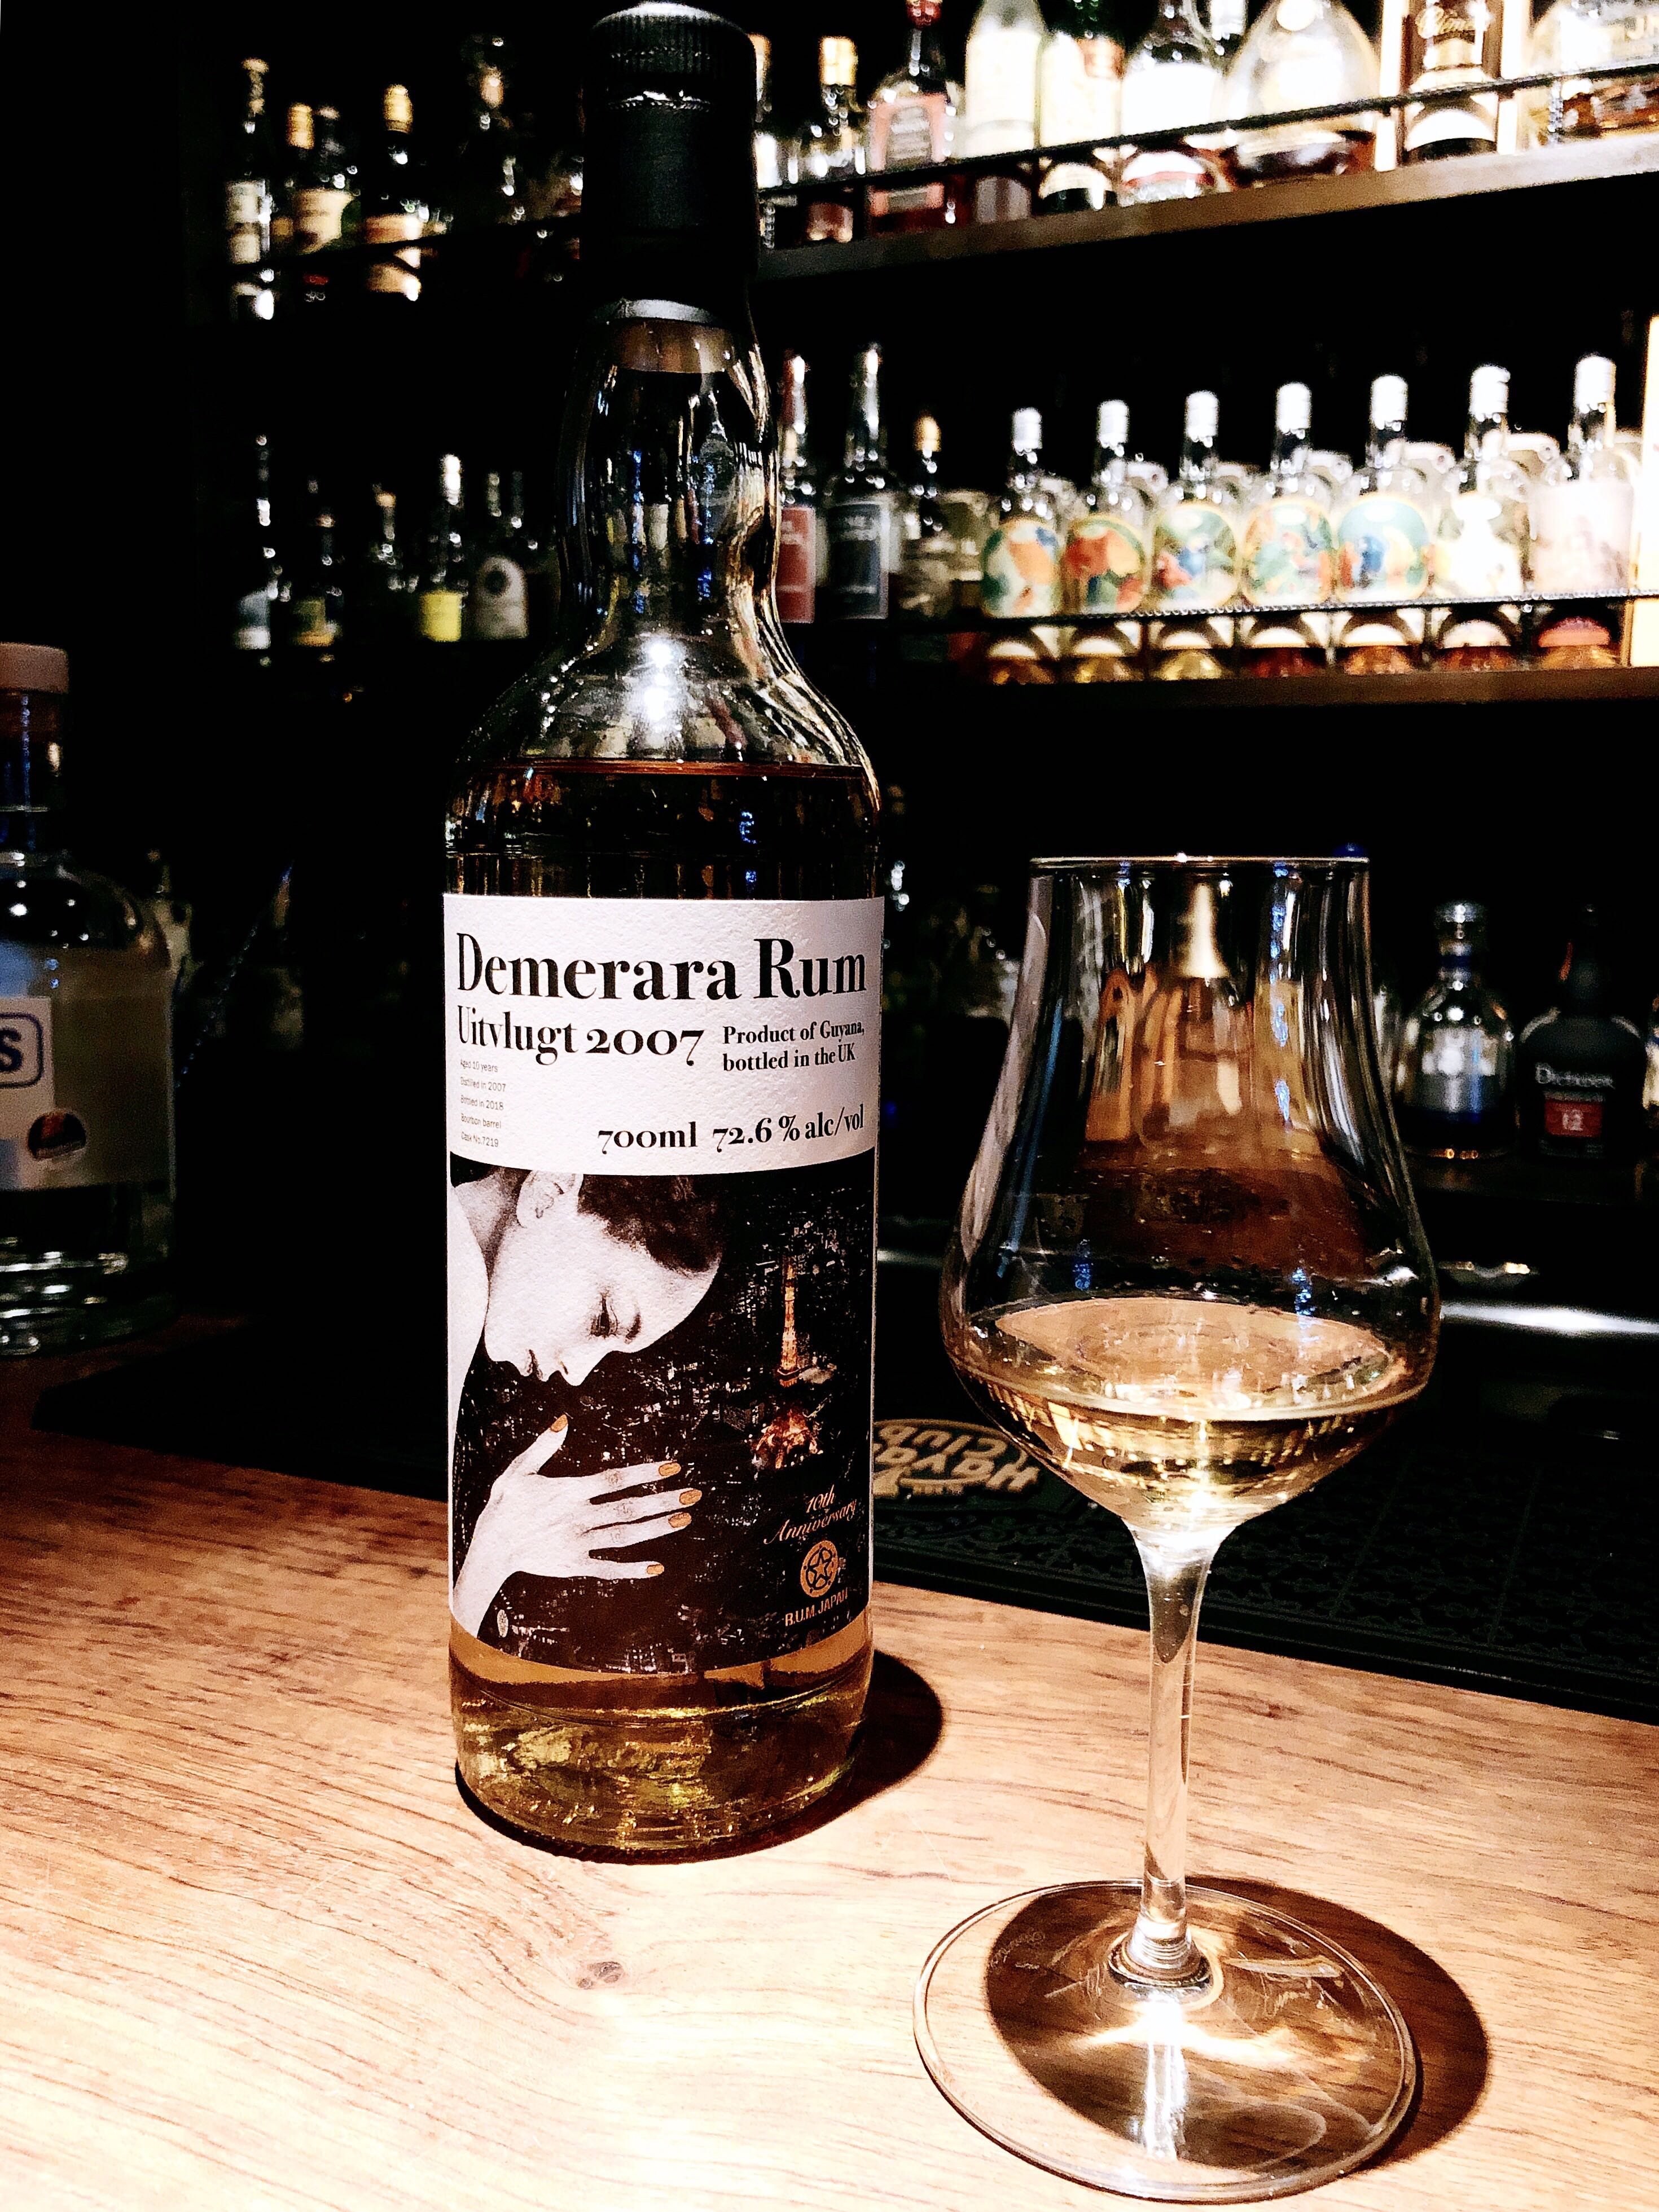 Demerara Rum Uitvlugt 2007 Rum Japan 10Th ANNIVERSARY - サウスアメリカ